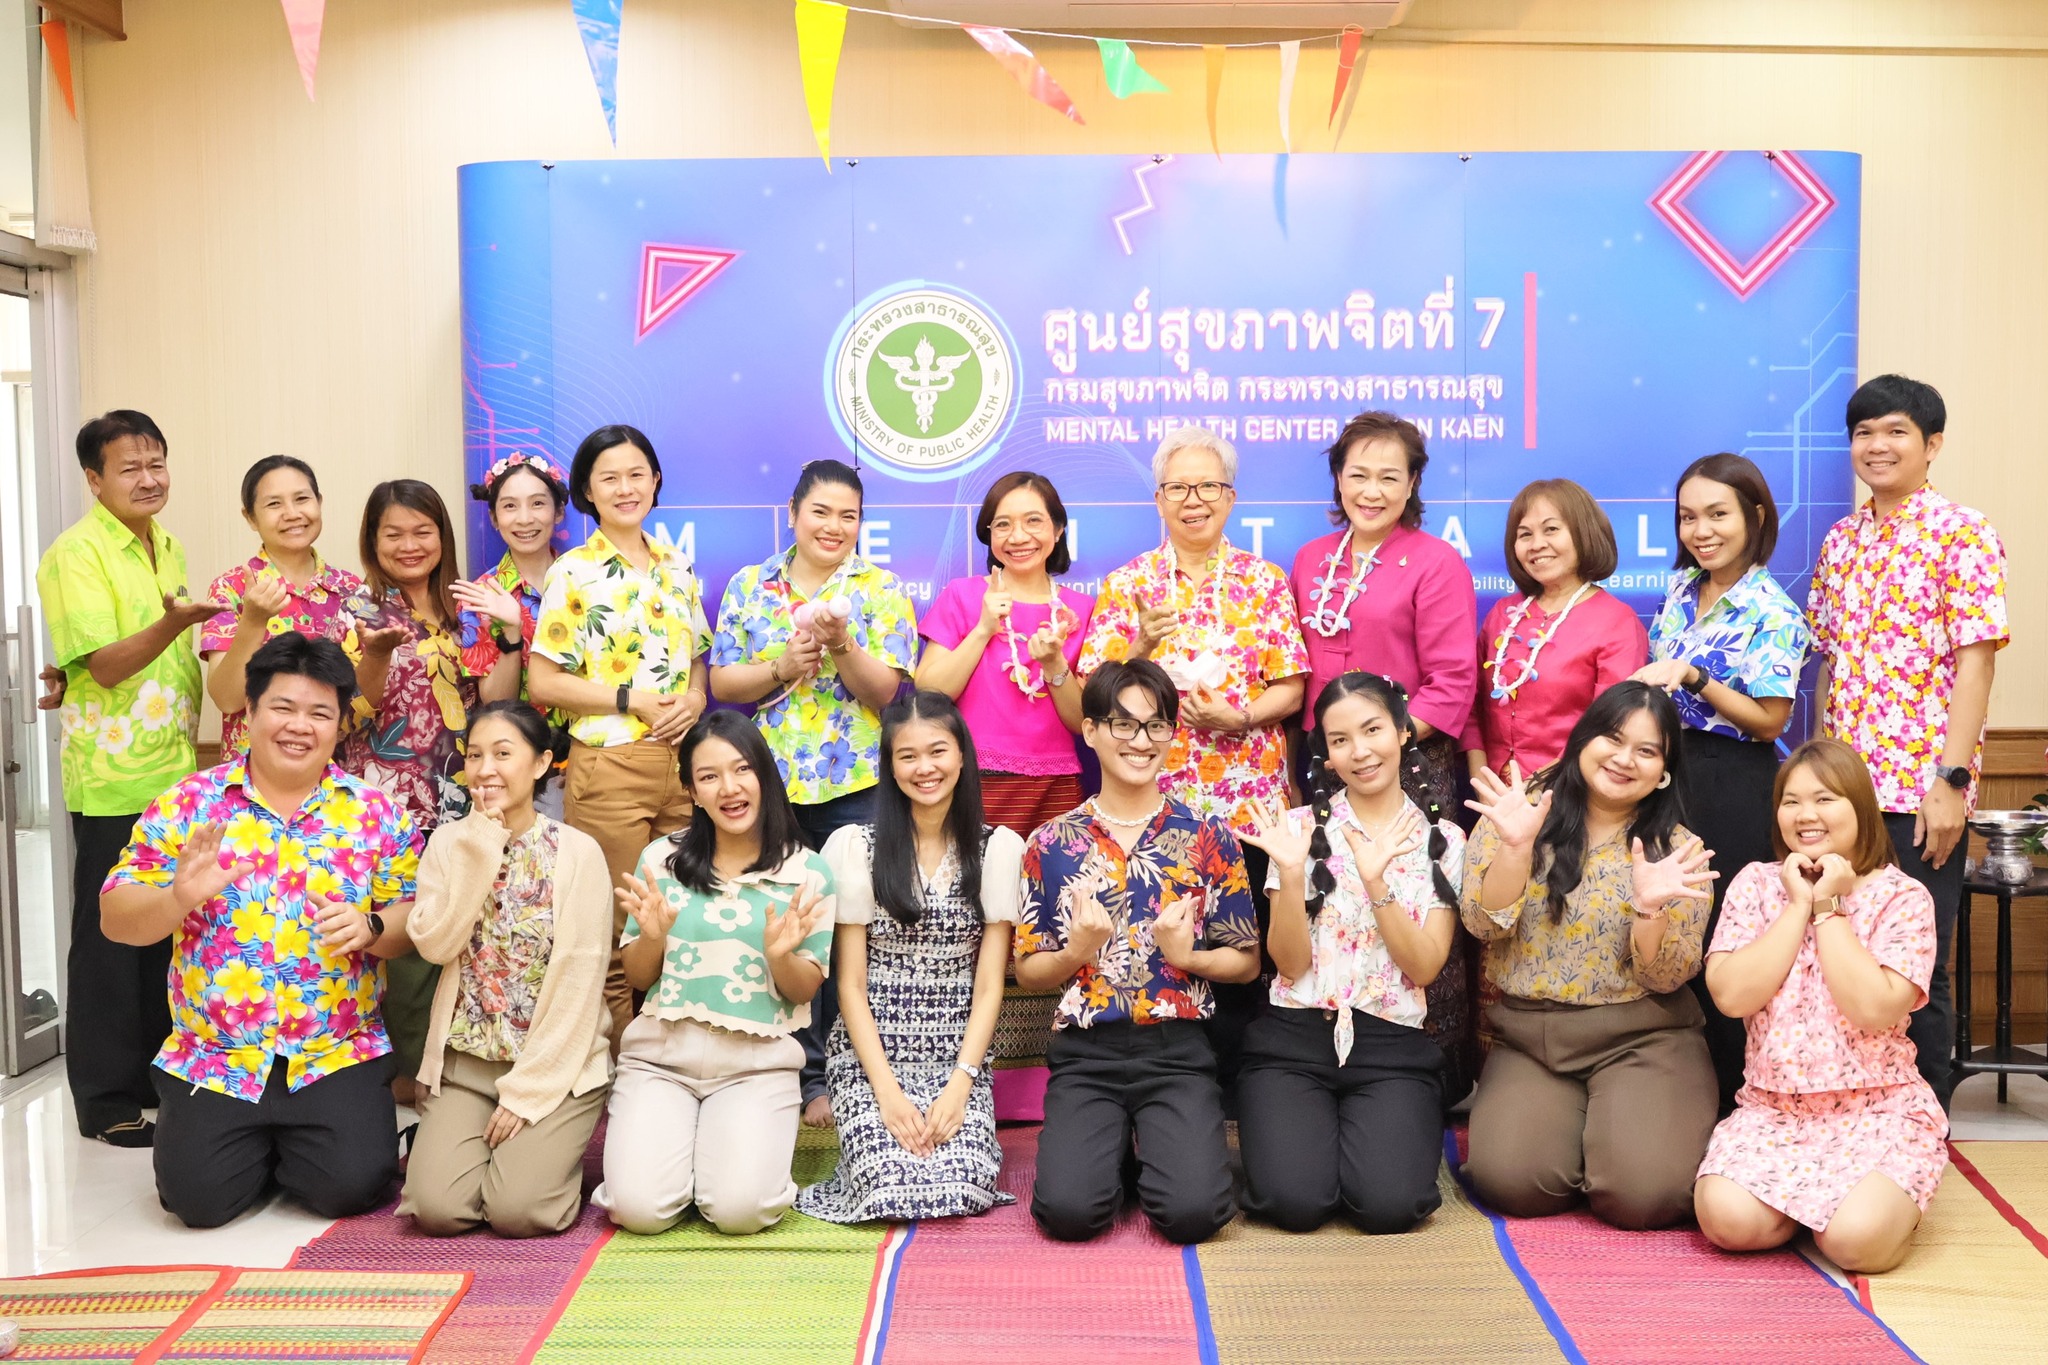 ⭐️ ศูนย์สุขภาพจิตที่ 7 จัดกิจกรรมรดน้ำขอพร เนื่องในวันขึ้นปีใหม่ไทย